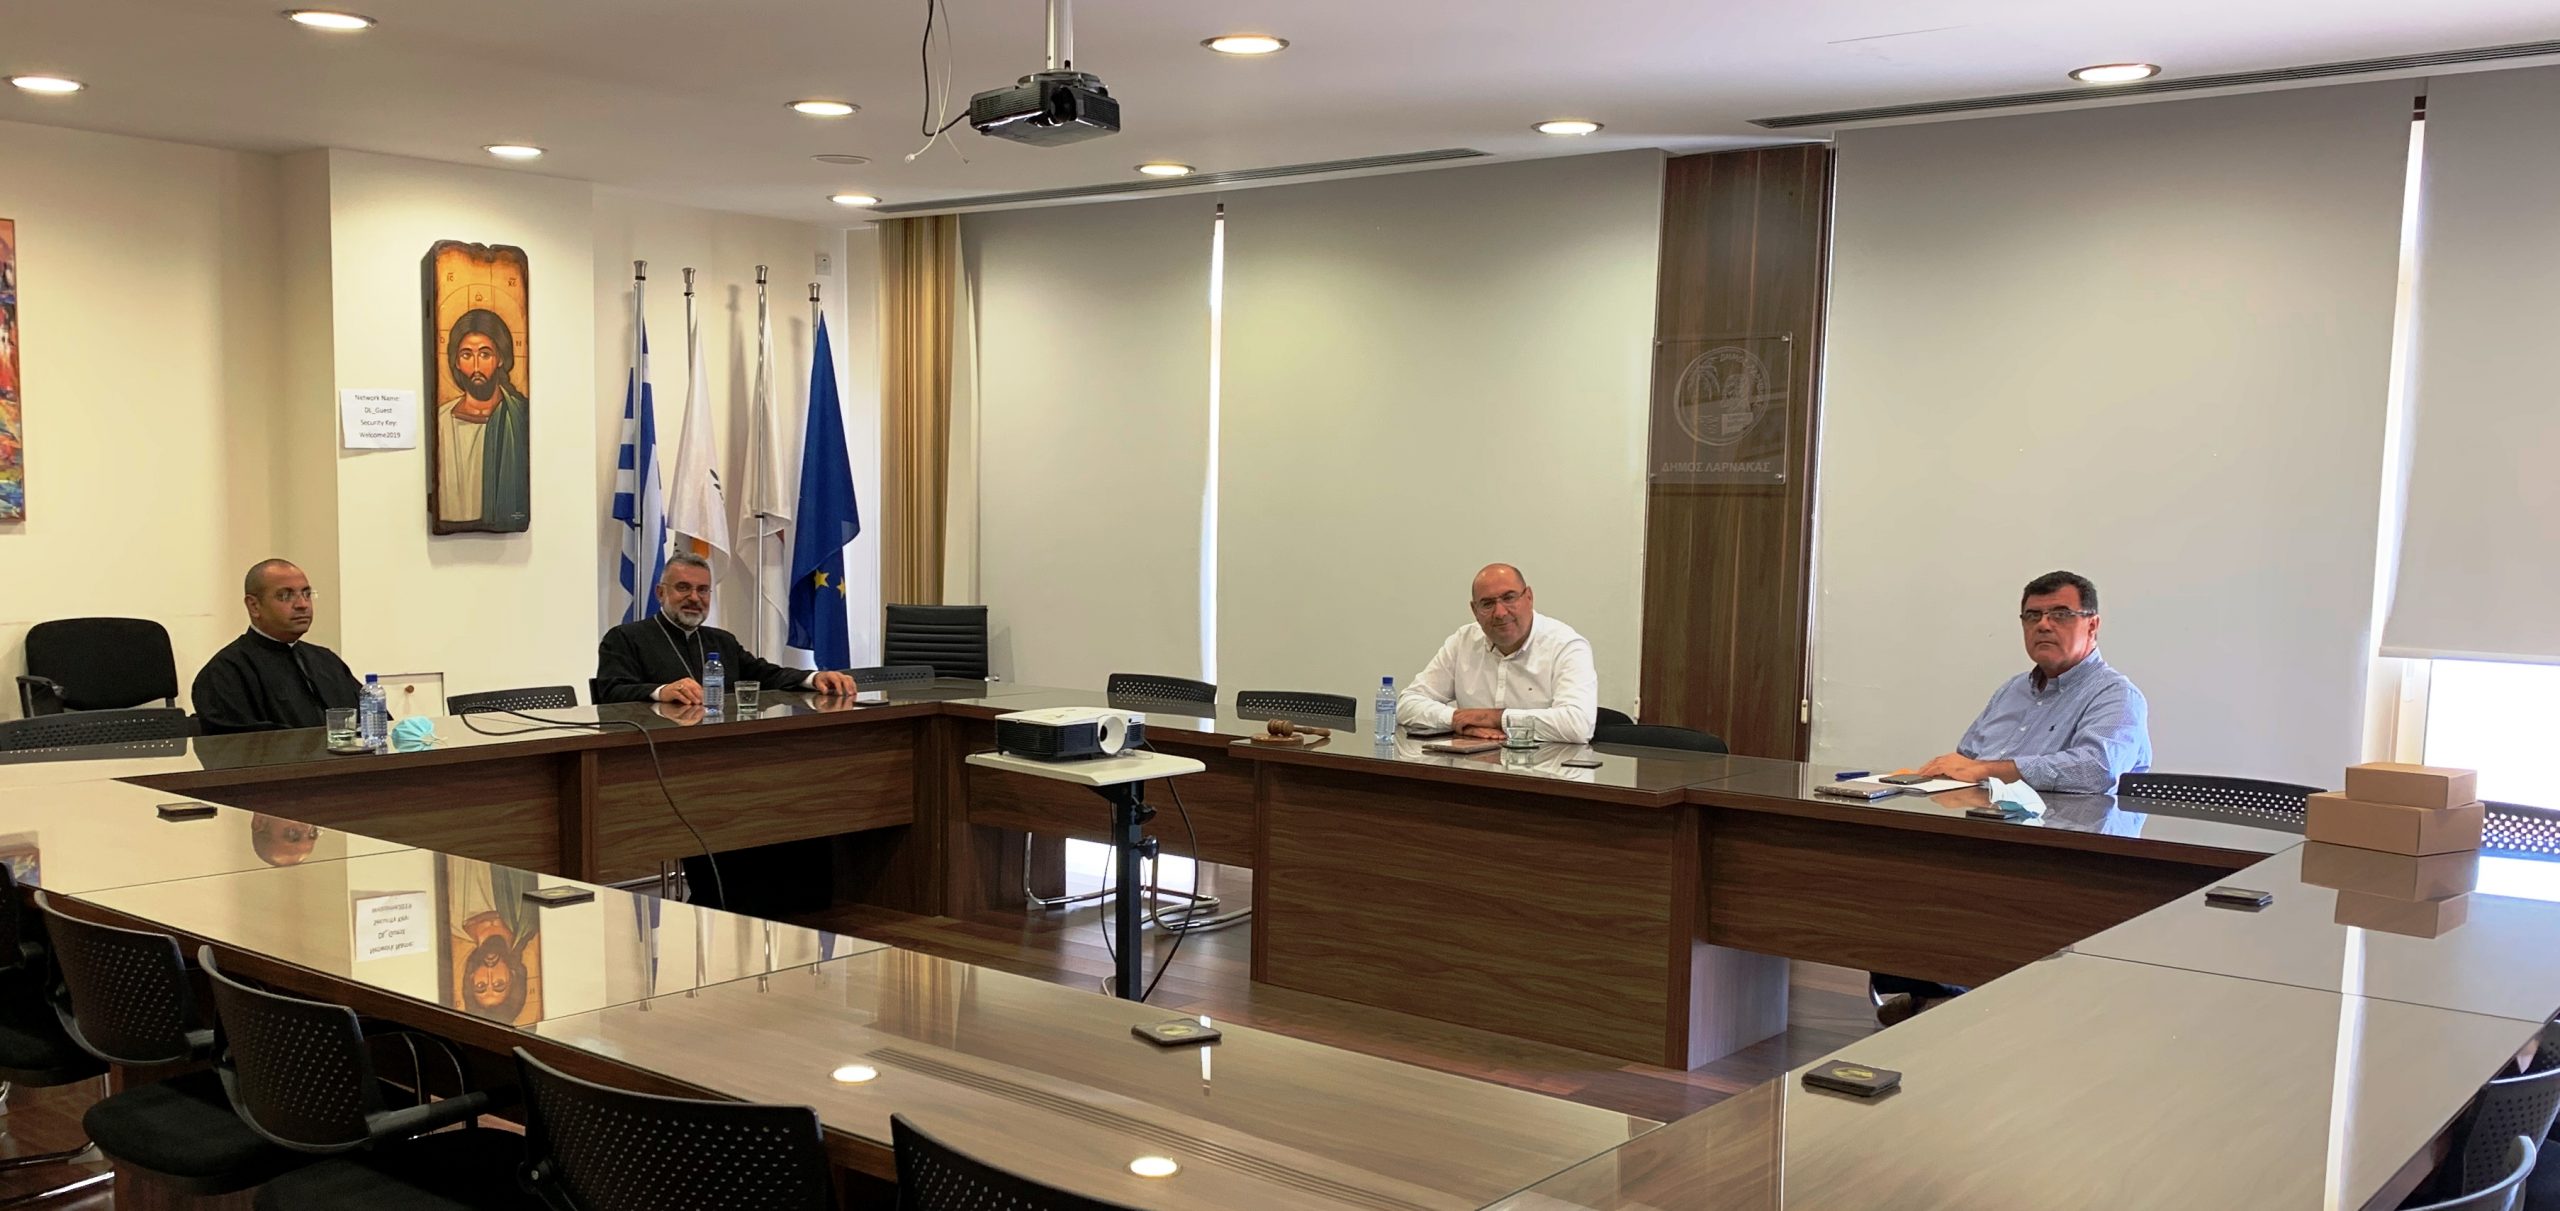 Φιλοφρονητική Επίσκεψη Αρχιεπισκόπου Μαρωνιτών Κύπρου κ.κ. Joseph Soueif στο Δήμο Λάρνακας